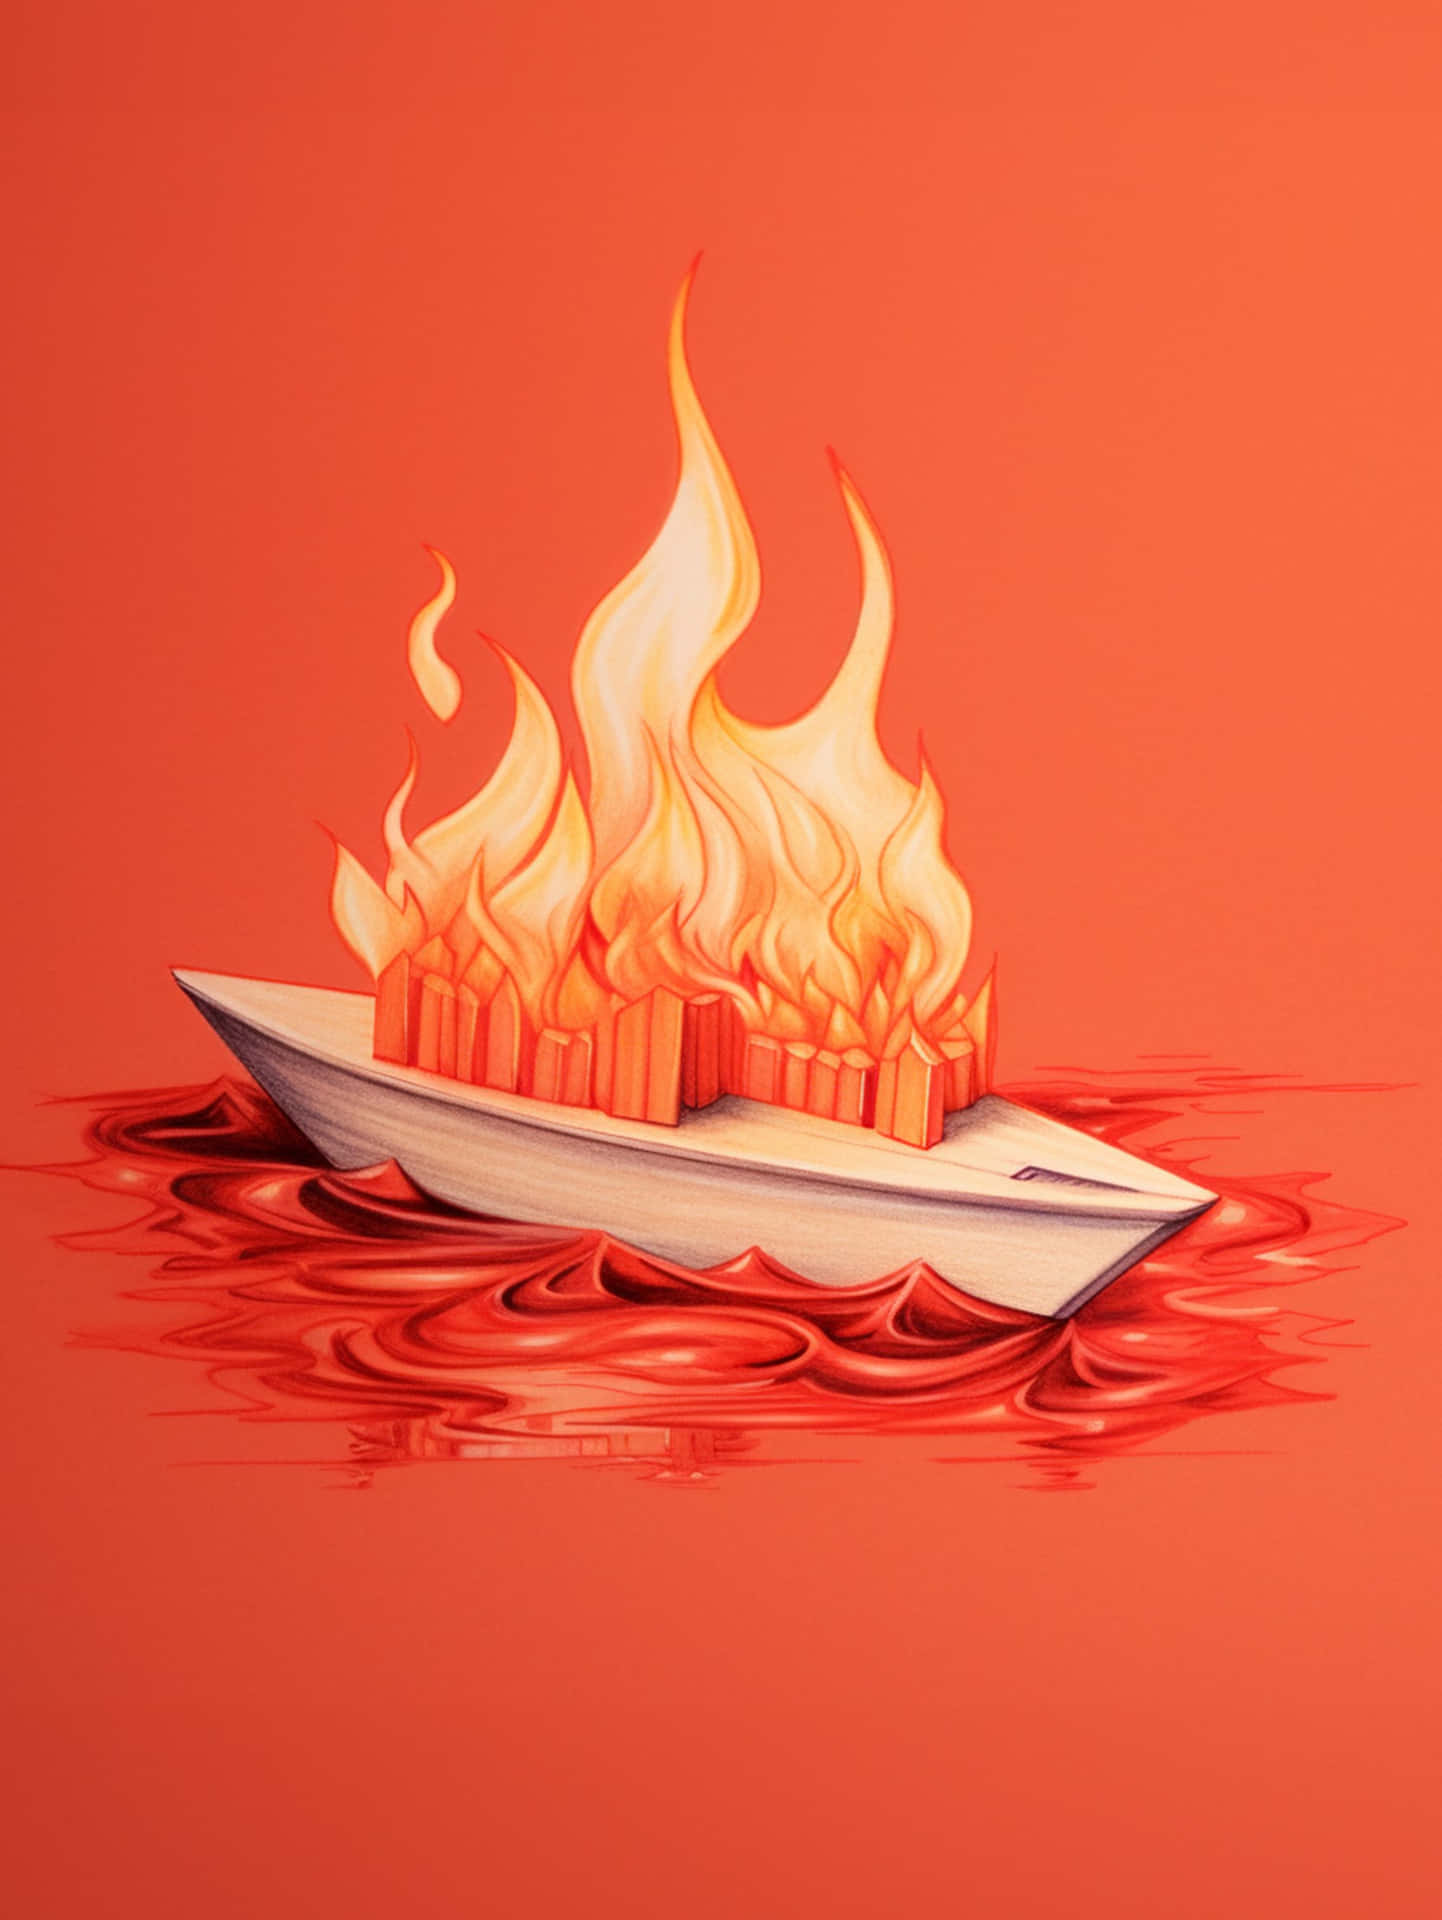 Burning Boat Illustration Wallpaper